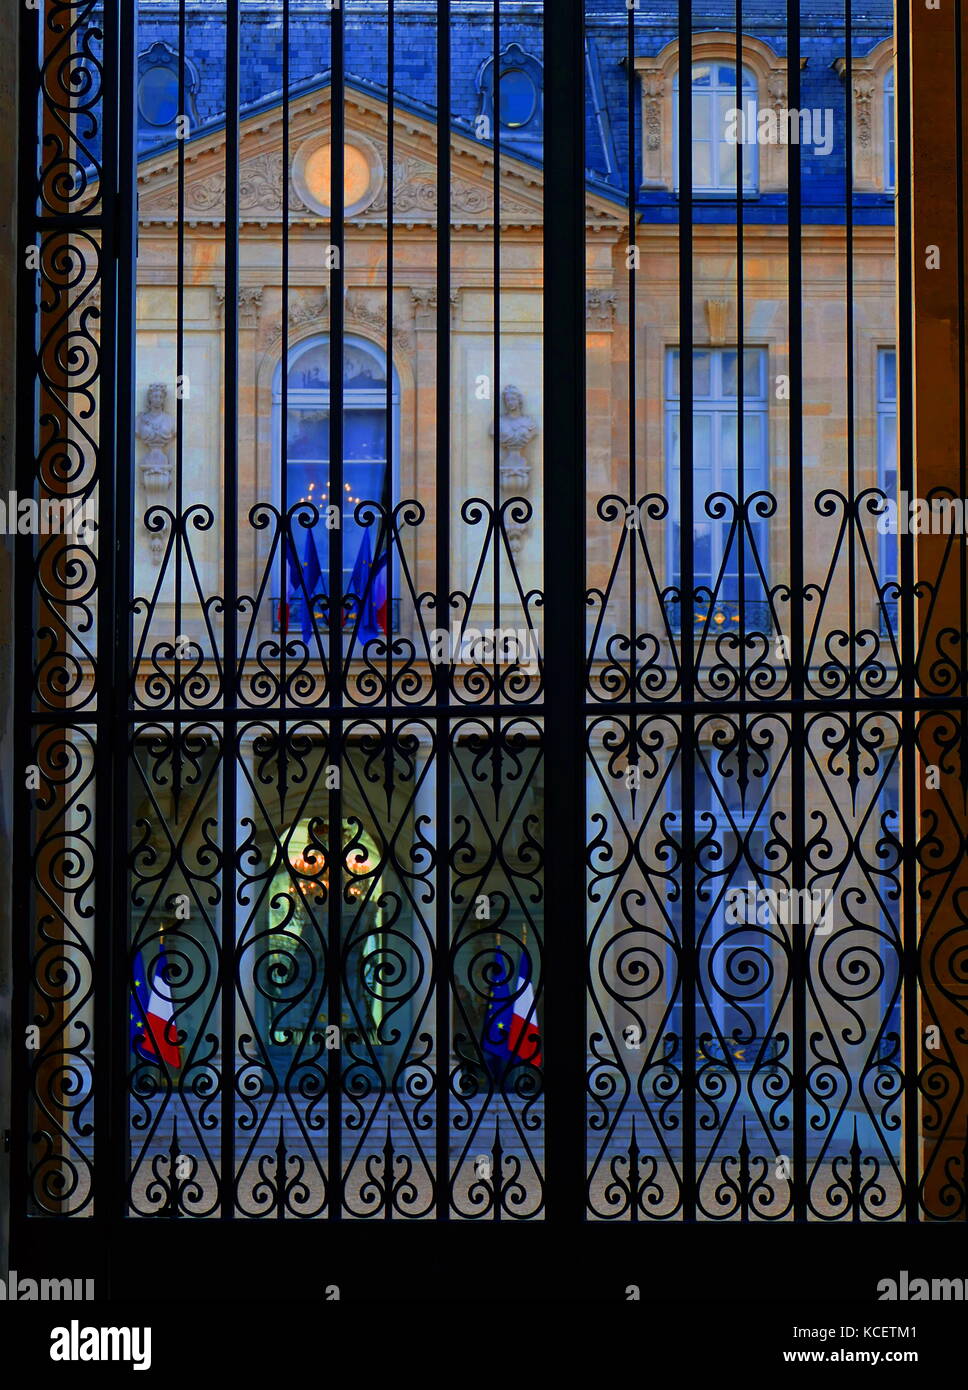 El Palacio del Elíseo (Palais de l'Elíseo) ha sido la residencia oficial del Presidente de la República Francesa desde 1848. Que data de principios del siglo XVIII, contiene la oficina del Presidente y el lugar de reunión del Consejo de Ministros. Se encuentra cerca de los Campos Elíseos en el 8º arrondissement de París Foto de stock